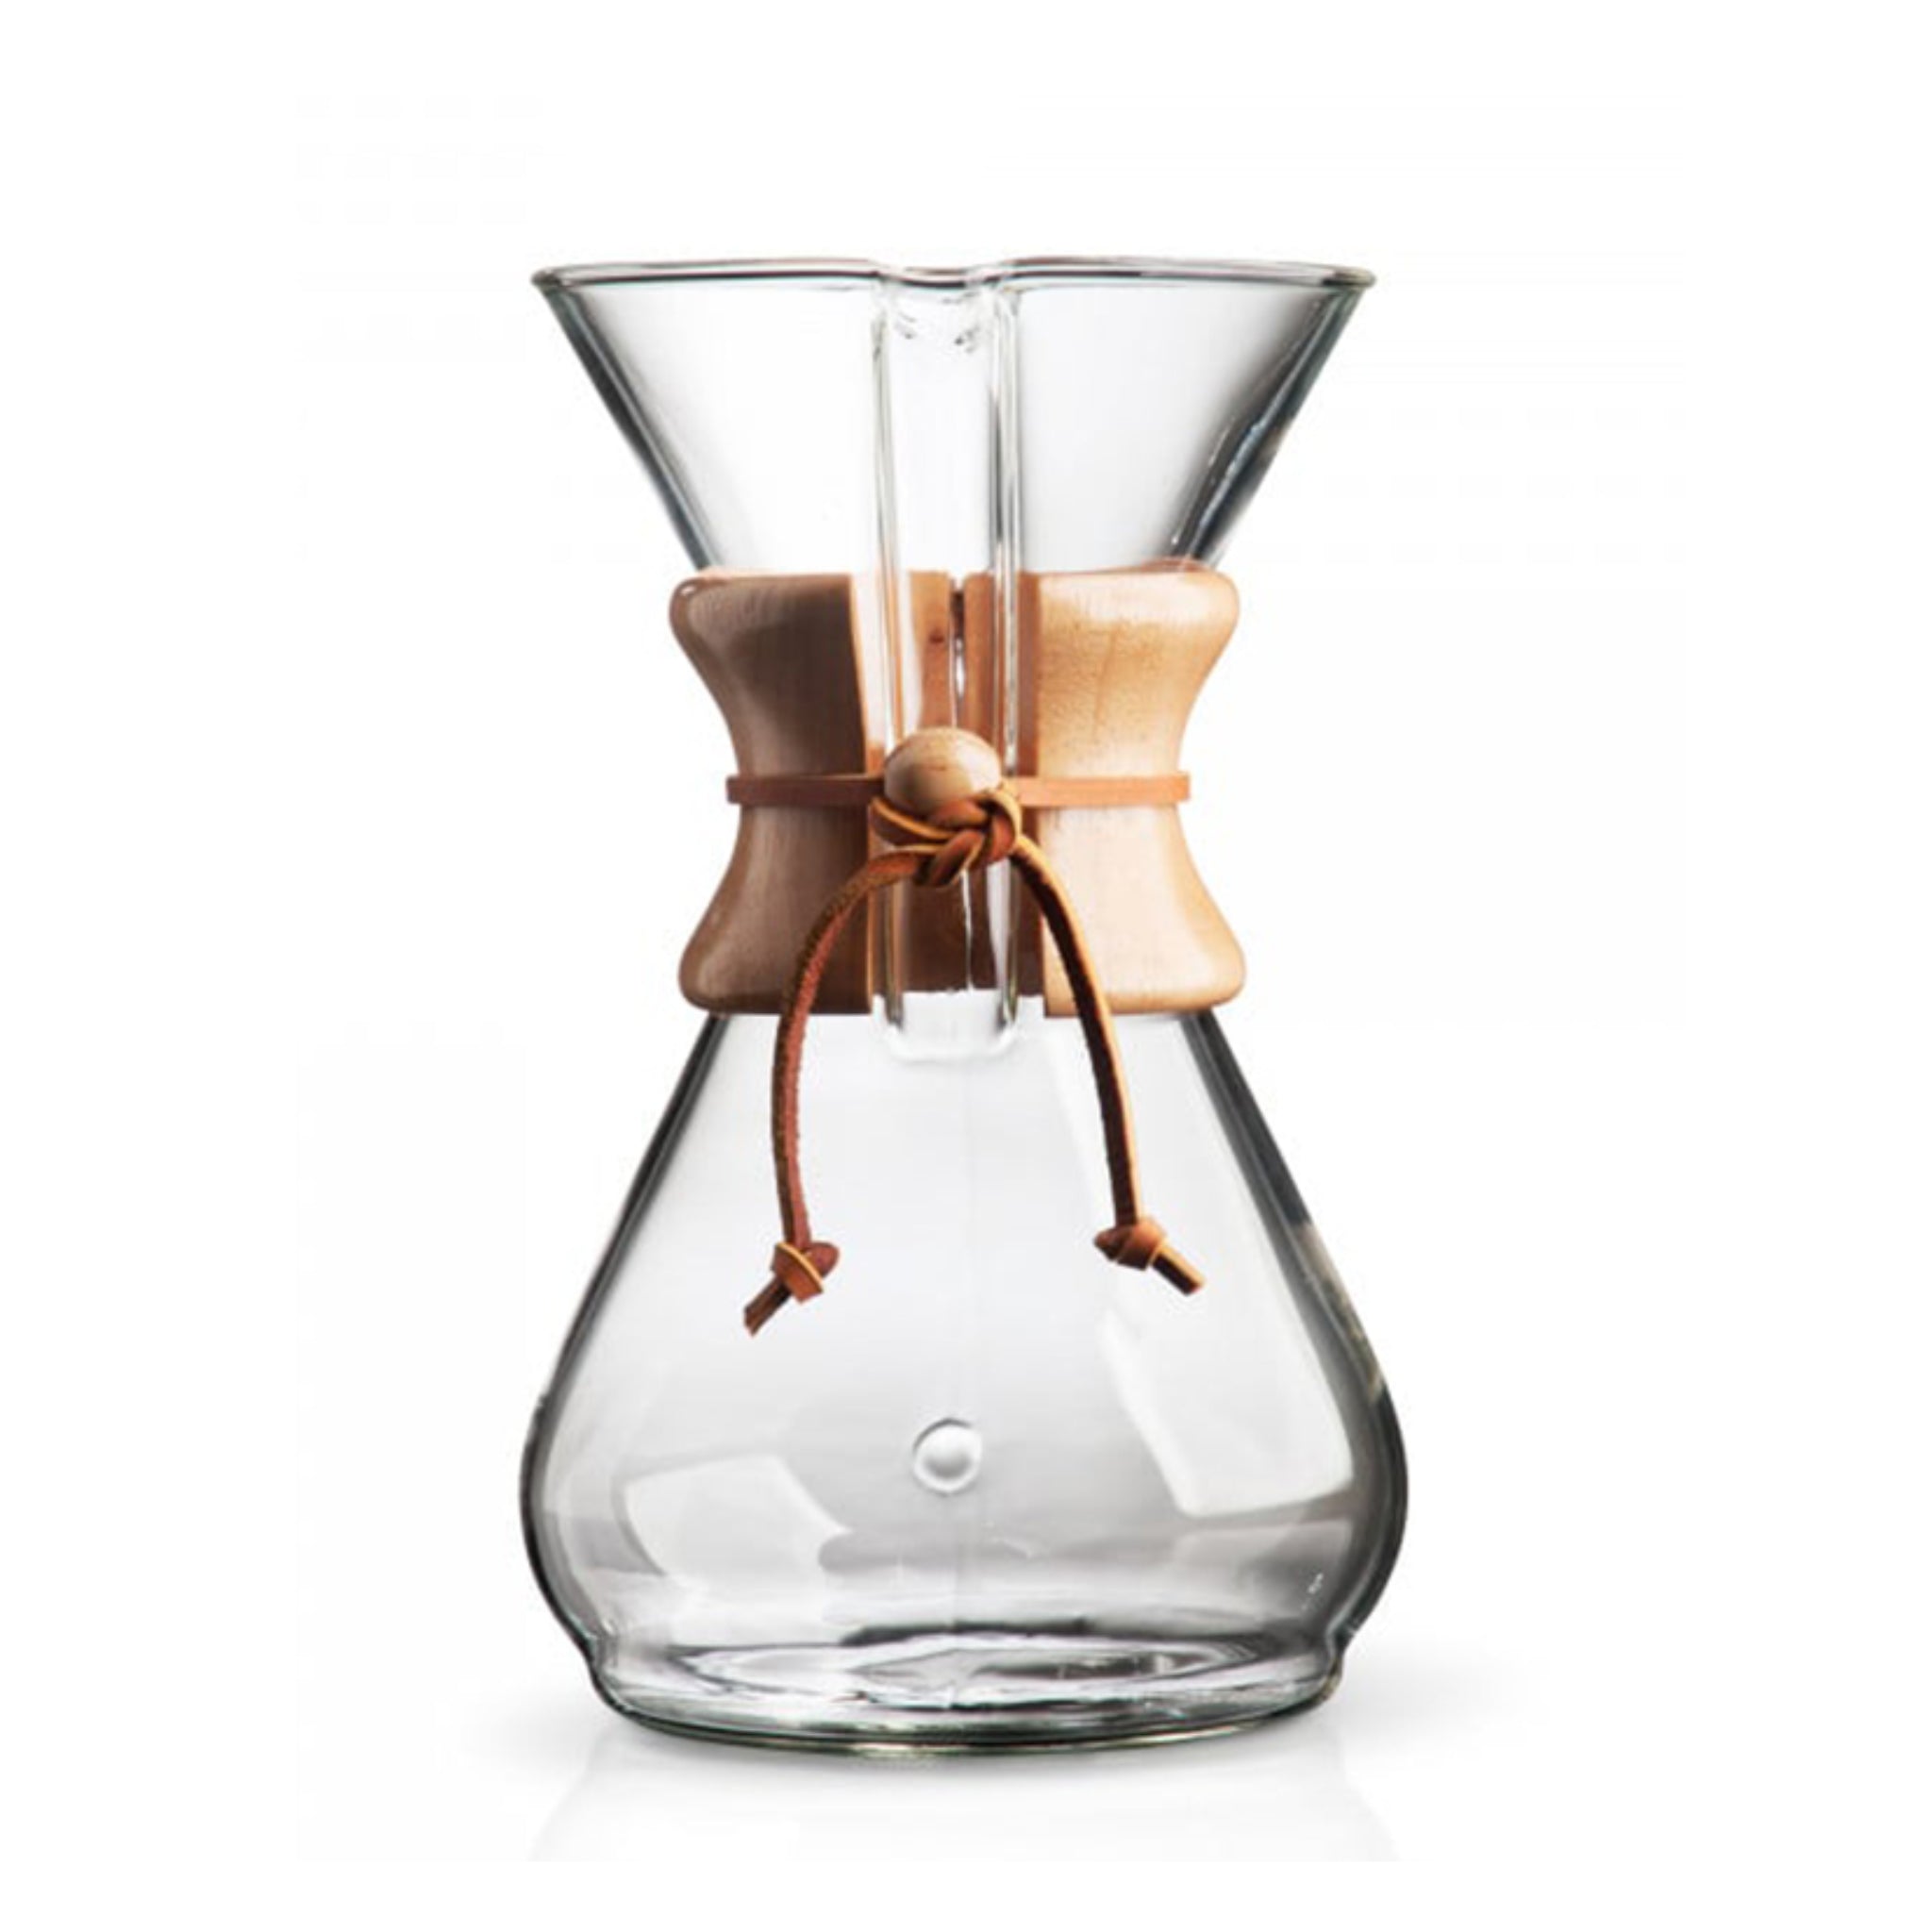 Produktbild der Chemex Glaskaraffe vor weißem Hintergrund (Hero Shot). Das Design erinnert an eine Sanduhr die oben offen ist. Am schmalen Teil ist eine Holumanschette angebracht, die mit einem Lederband gesichert ist. Version für 8 Tassen Kaffee.